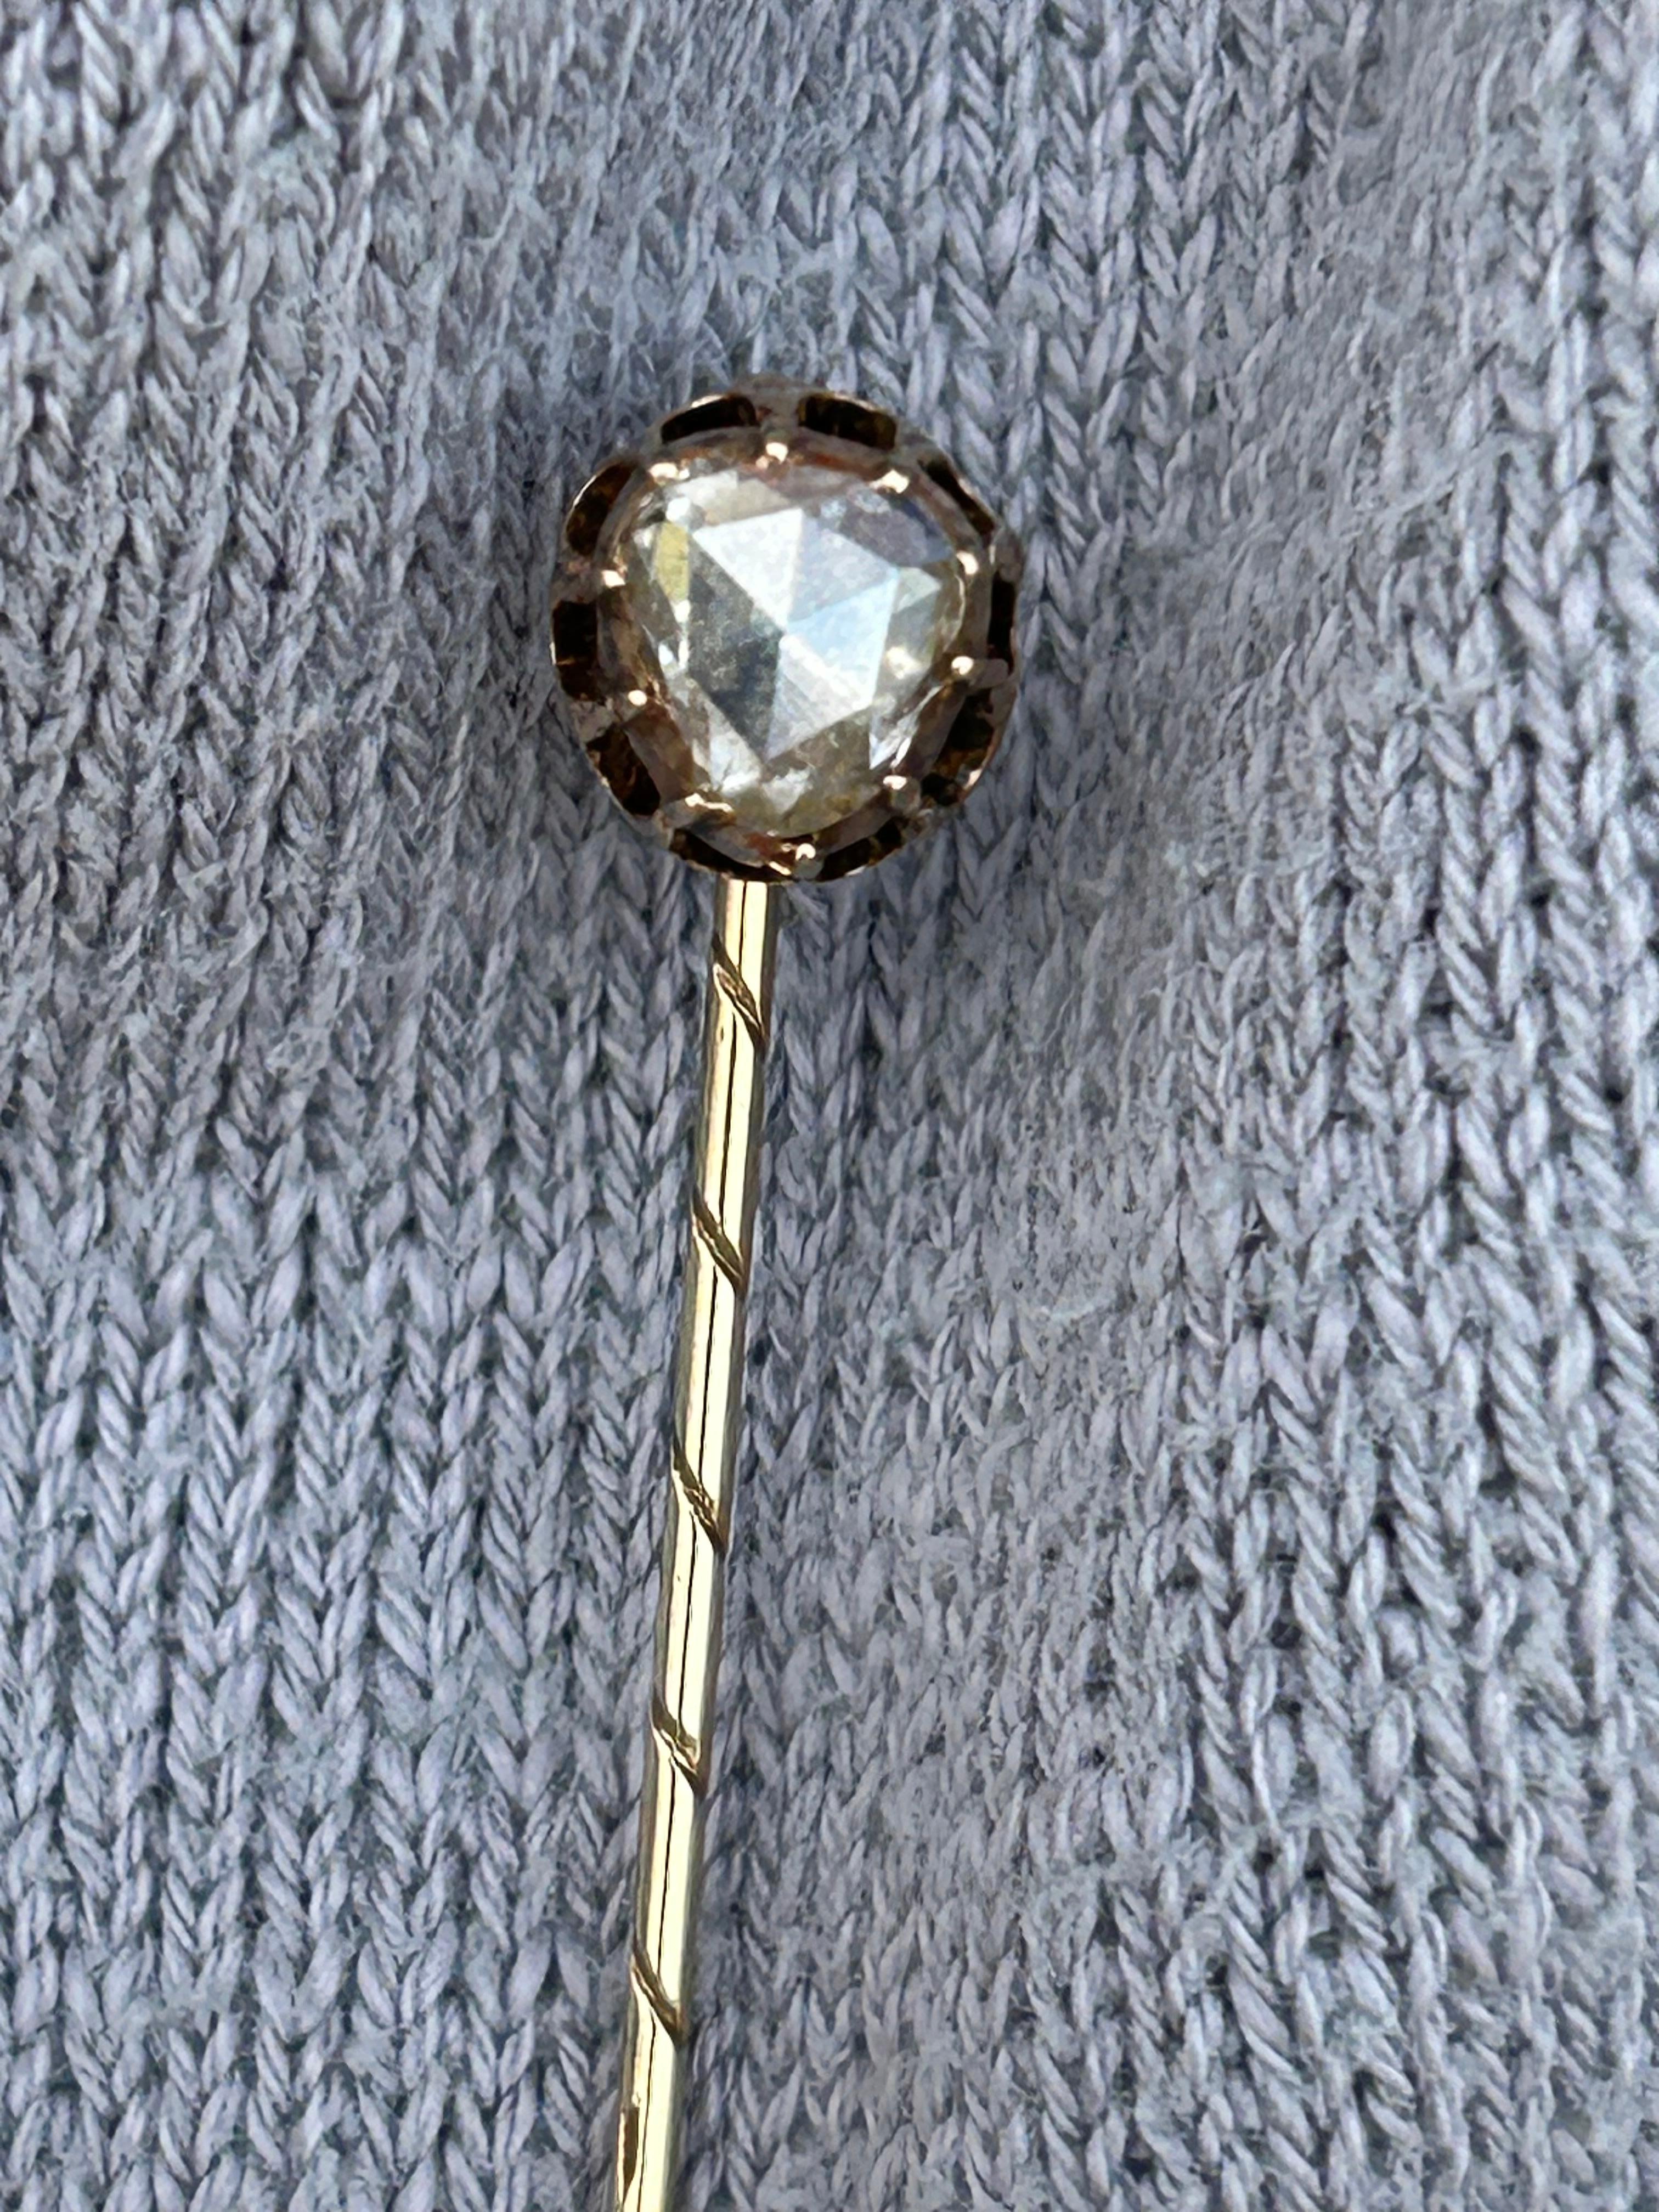 Épingle de bâton victorienne en diamant taillé en poire et en rose.
Diamant 5,9 mm x 5,2 mm
LxL : 6,5 centimètres x 0,08 cm.
1.72 grammes